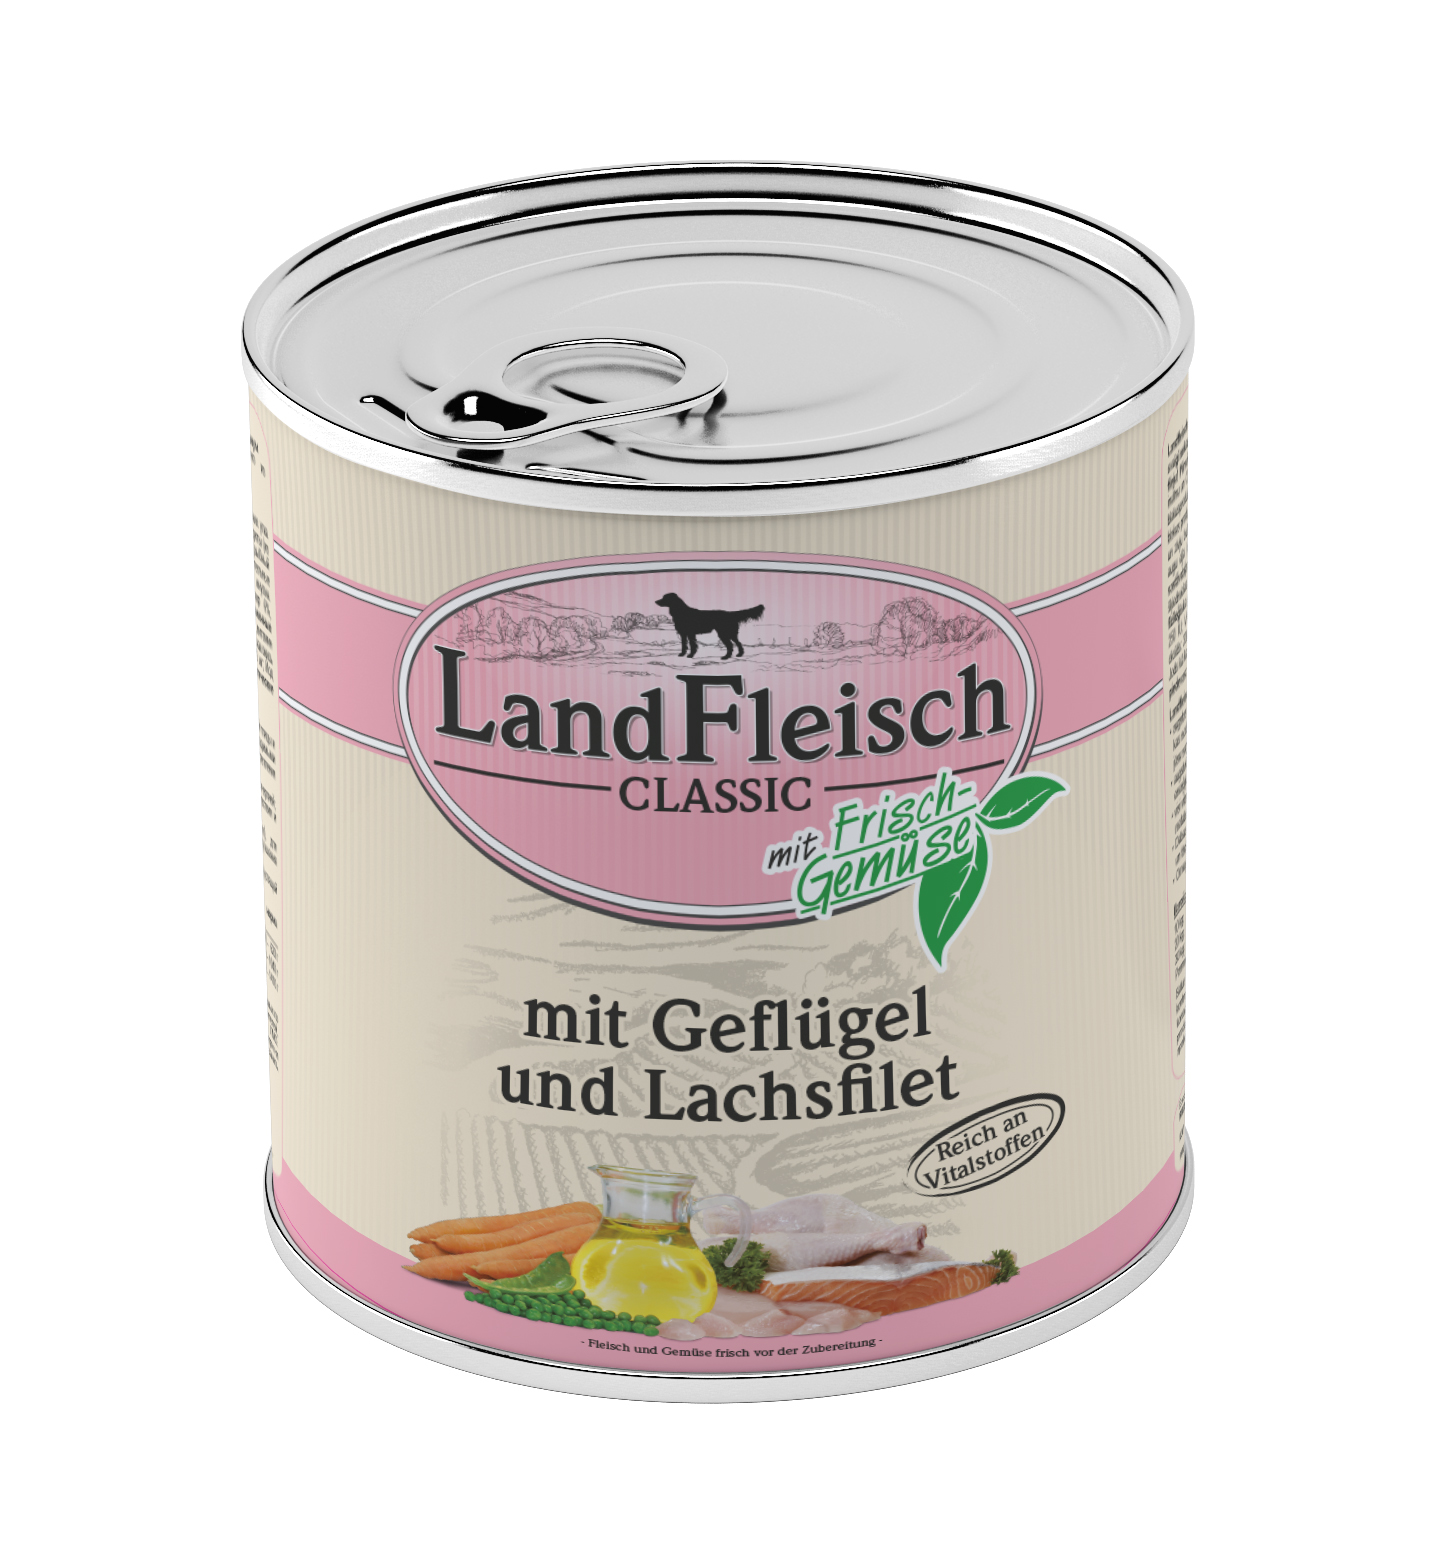 LandFleisch Classic Geflügel&Lachsfilet mit Frischgemüse 800g